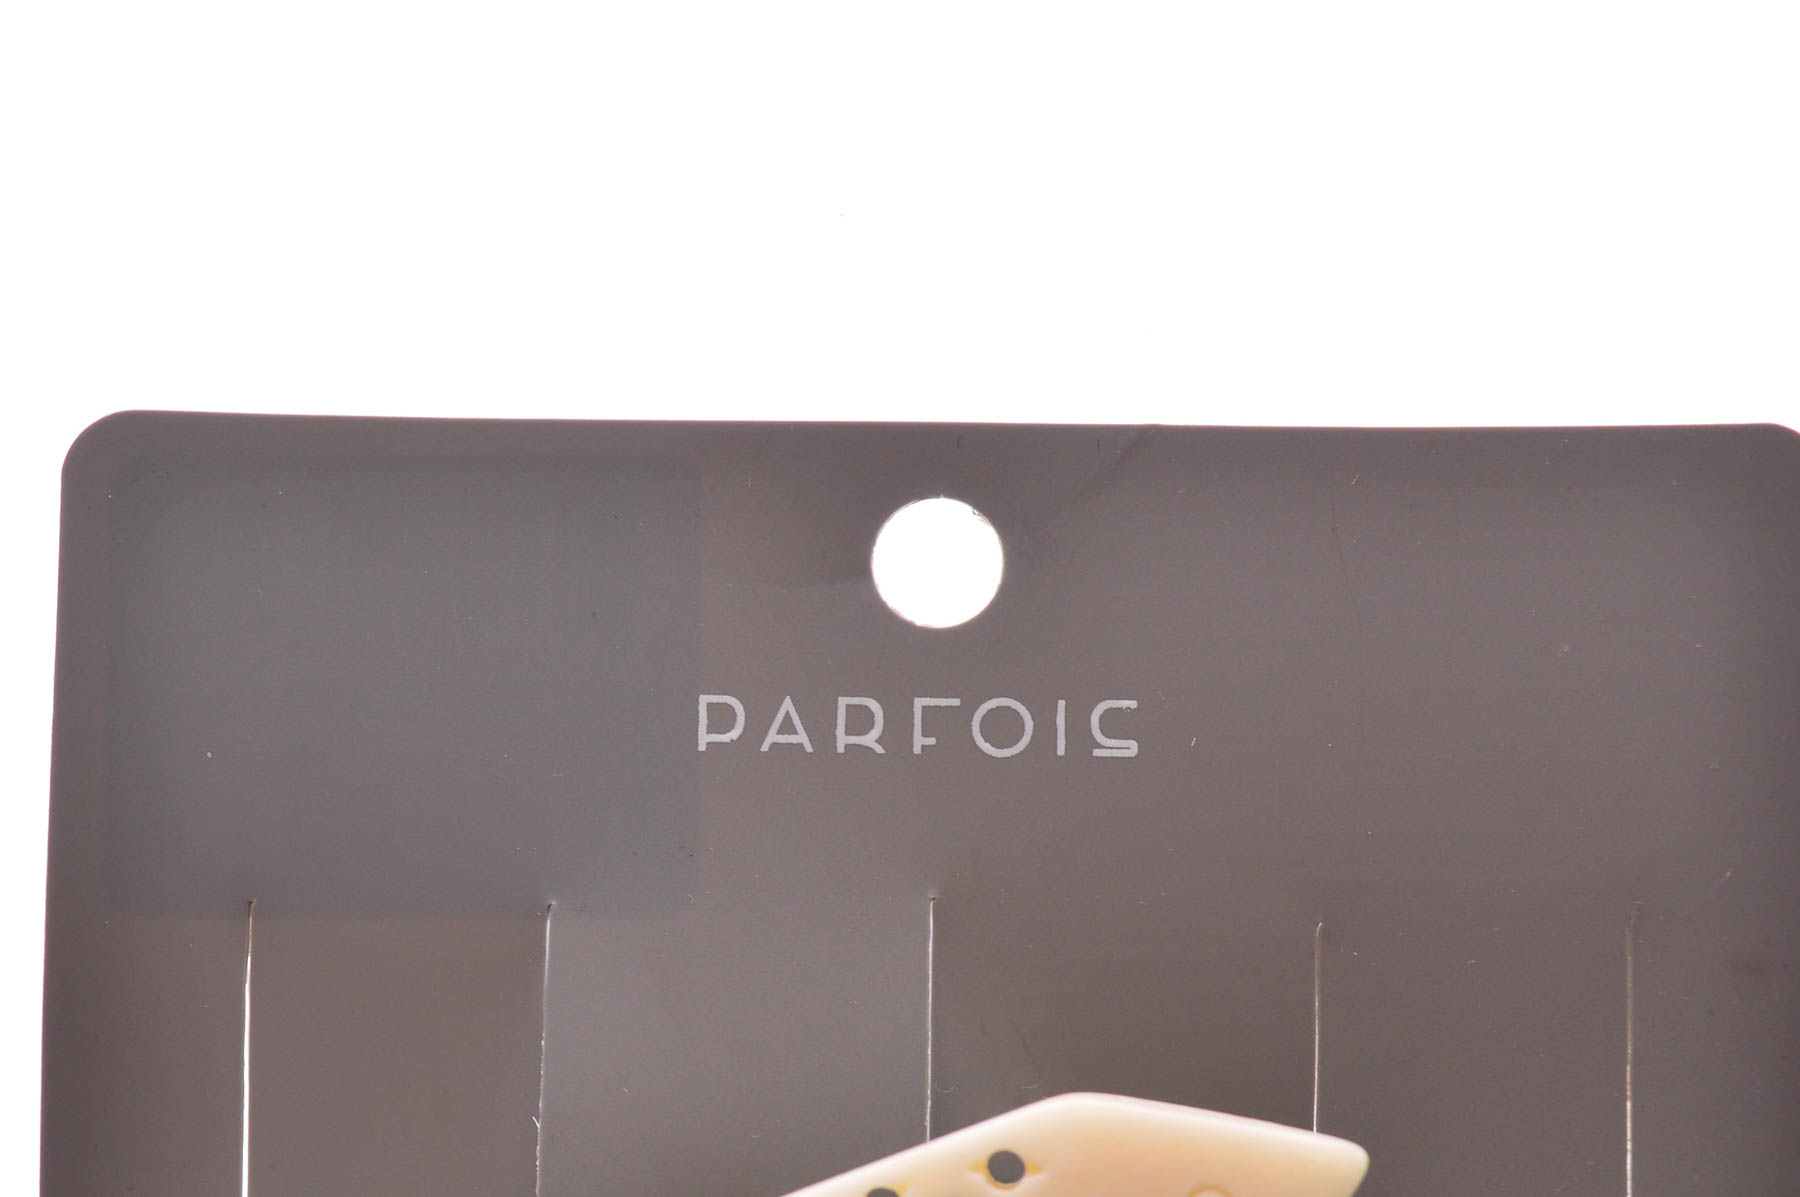 Barrette - PARFOIS - 2